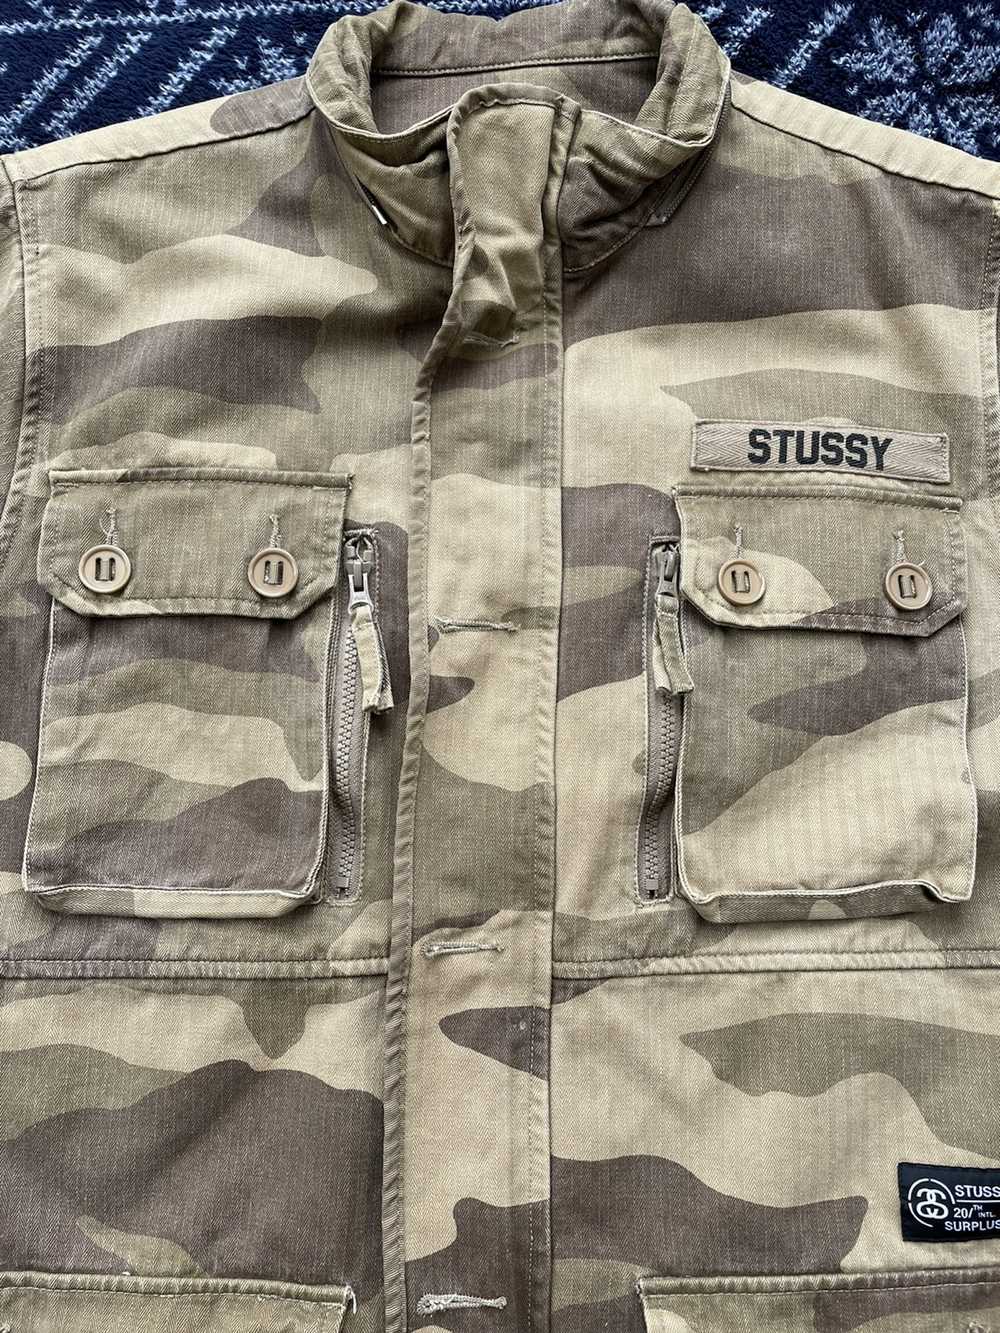 Stussy Stussy BDU Desert camouflage jacket - image 4